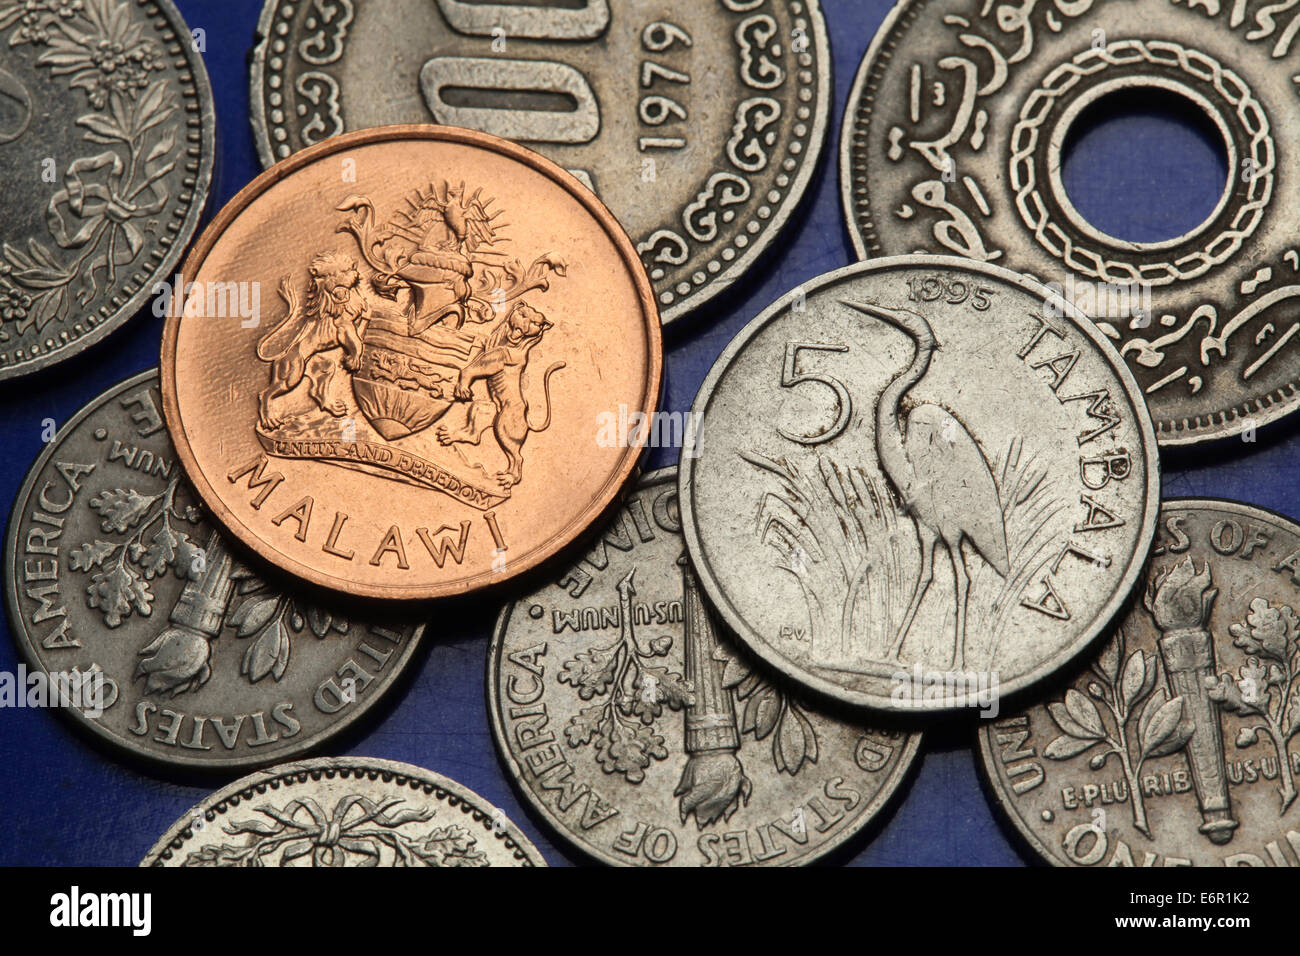 Des crédits du Malawi. Héron pourpré (Ardea purpurea) et armoiries du Malawi Malawi illustre cents pièces. Banque D'Images